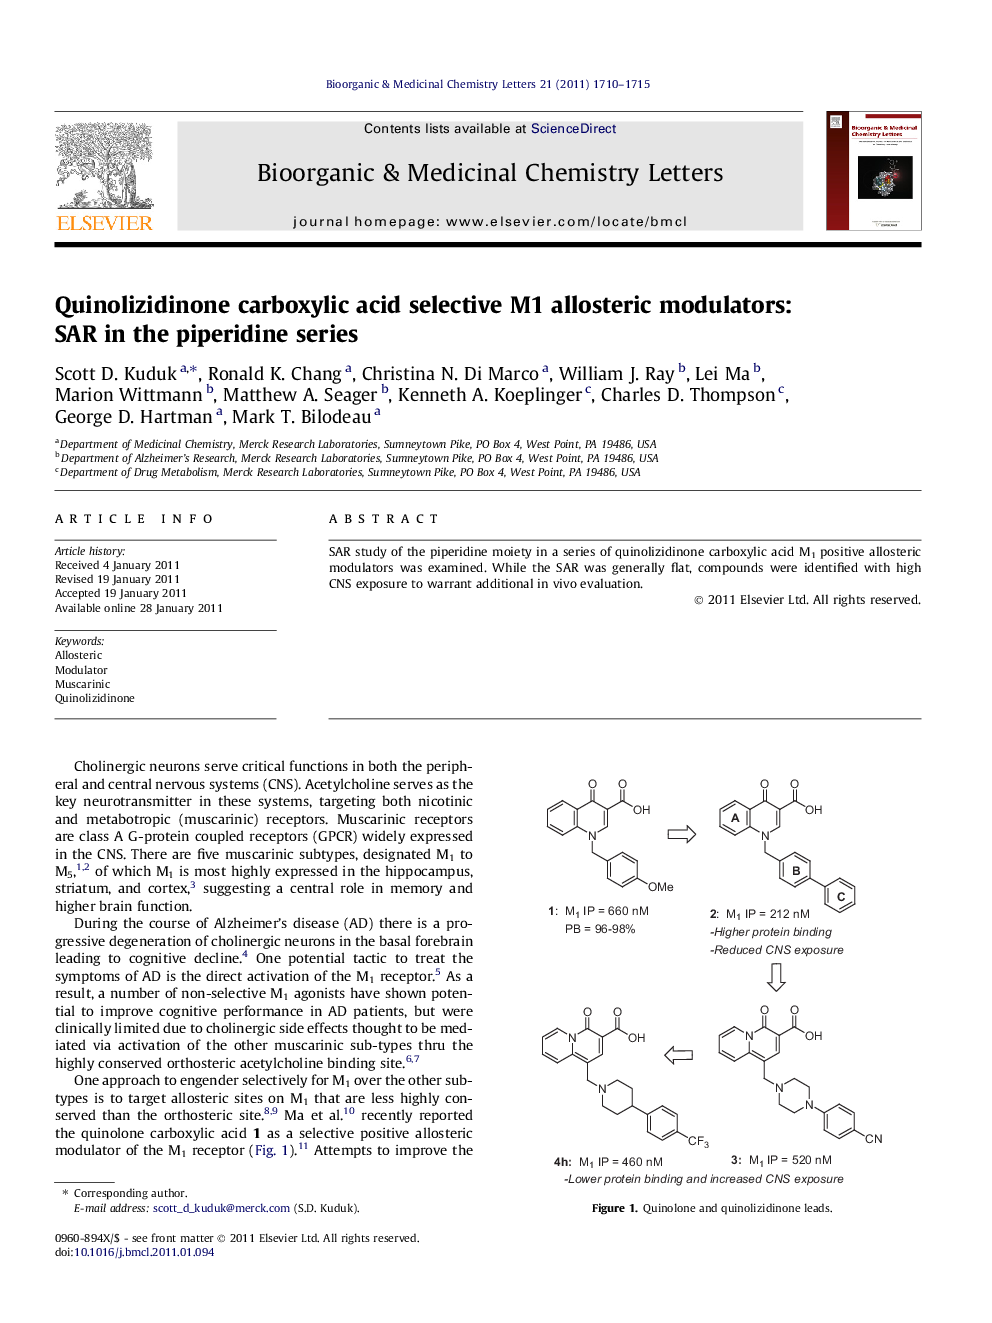 Quinolizidinone carboxylic acid selective M1 allosteric modulators: SAR in the piperidine series